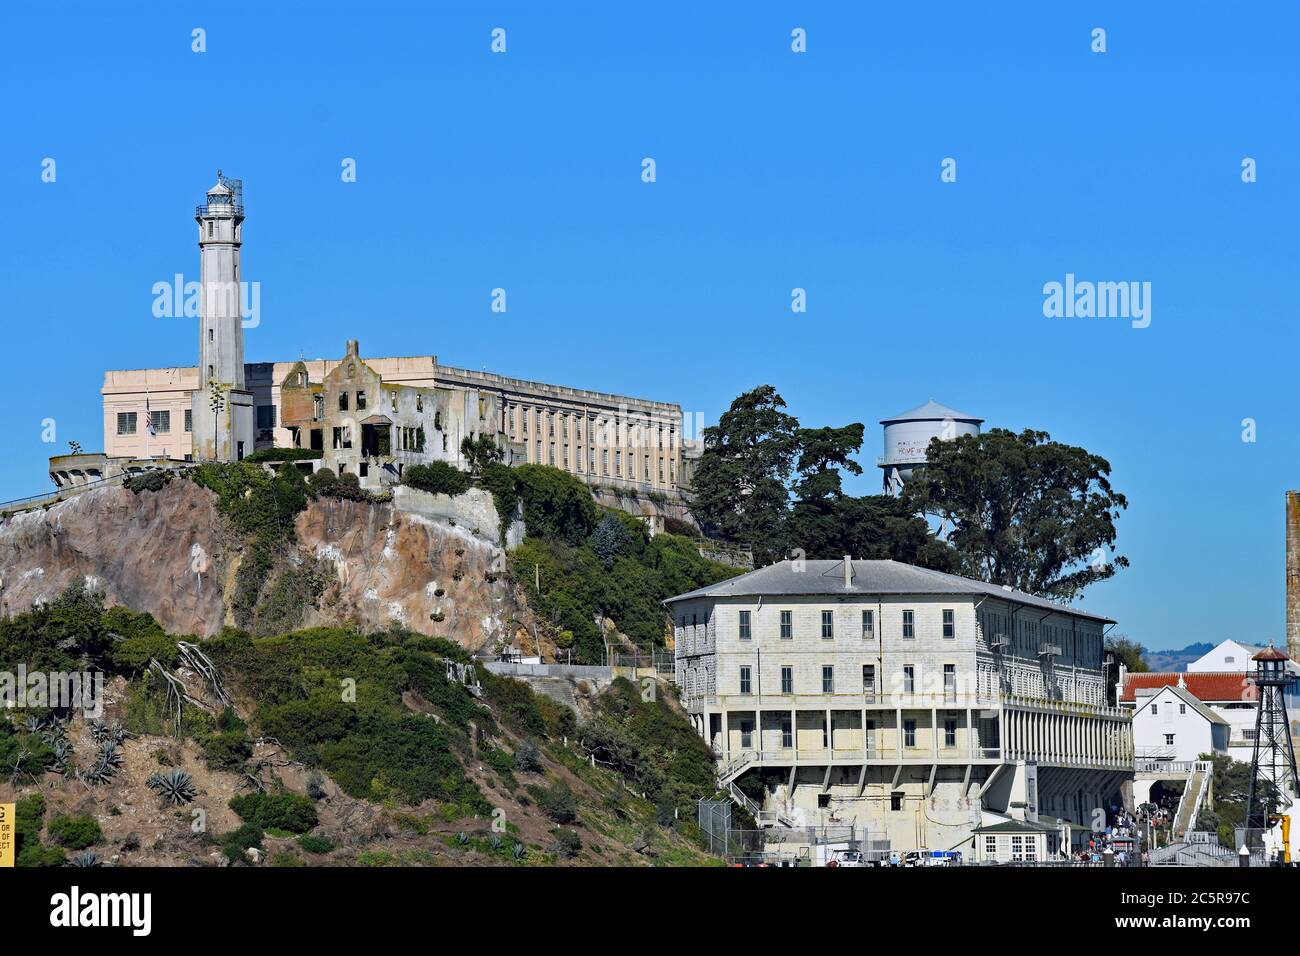 Photo de l'île d'Alcatraz depuis un bateau dans la baie de San Francisco. La maison de la cellée, le phare, la caserne et la tour d'eau sont visibles. San Francisco, Californie Banque D'Images